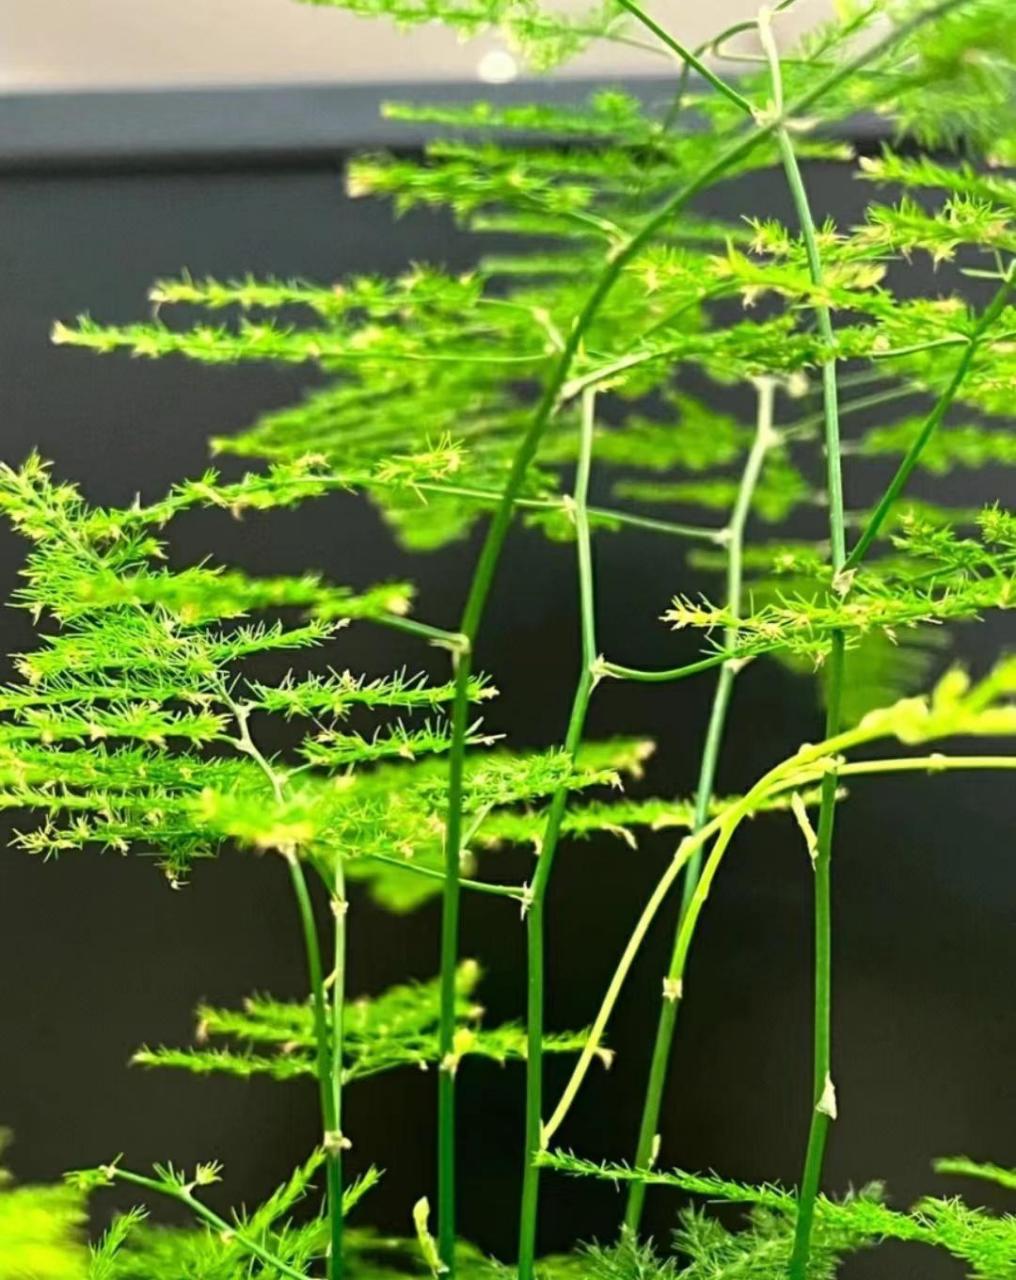 文竹 1,了解文竹:百合科天门冬属,多年生常绿蔓性草本花卉;为极具观赏